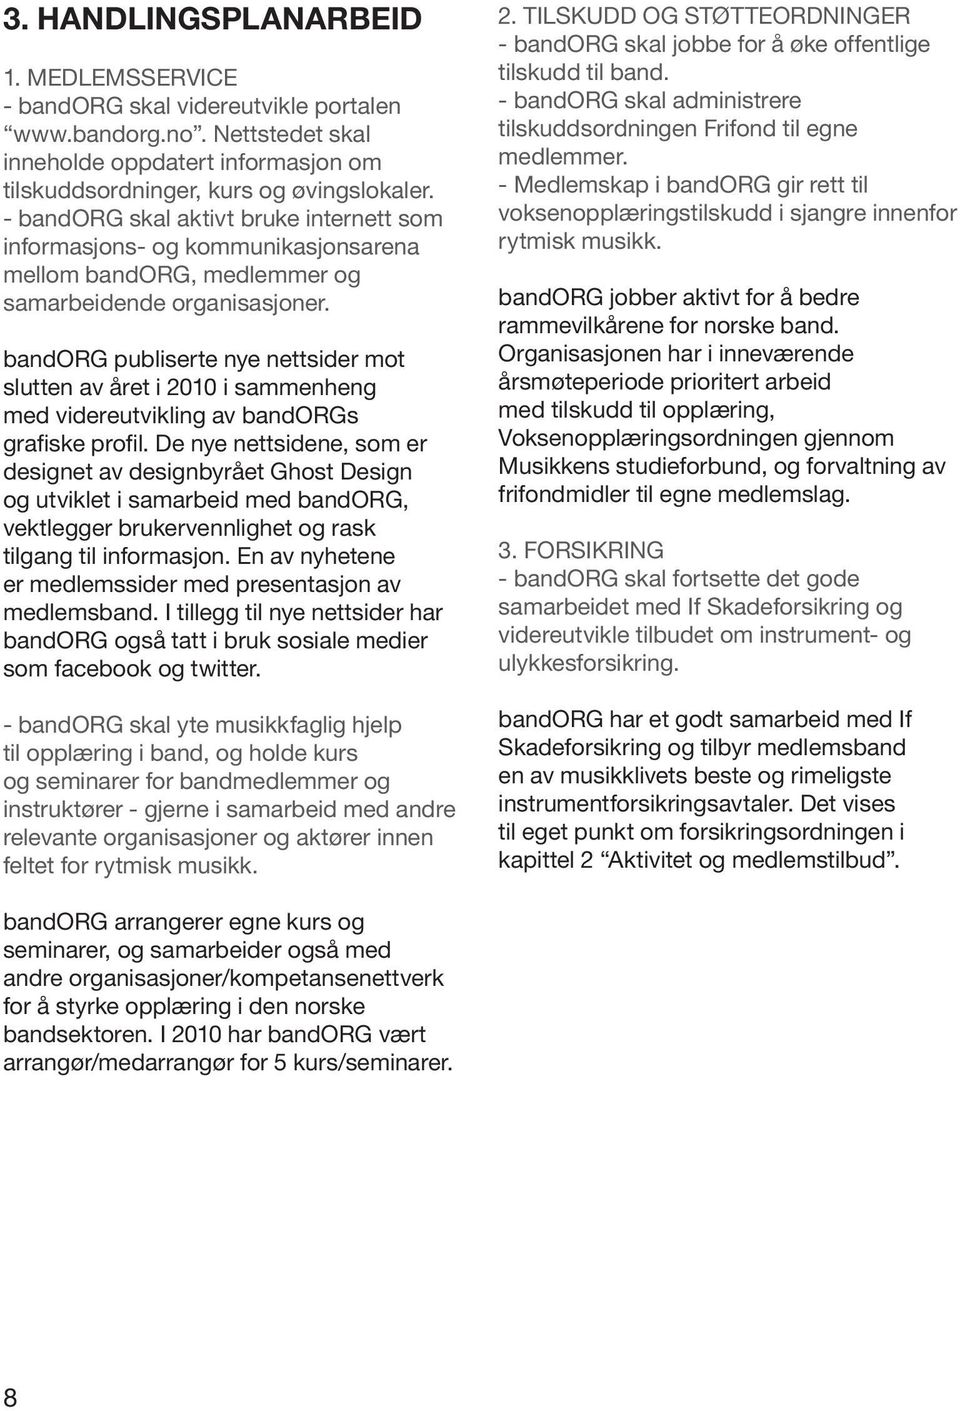 bandorg publiserte nye nettsider mot slutten av året i 2010 i sammenheng med videreutvikling av bandorgs grafiske profil.